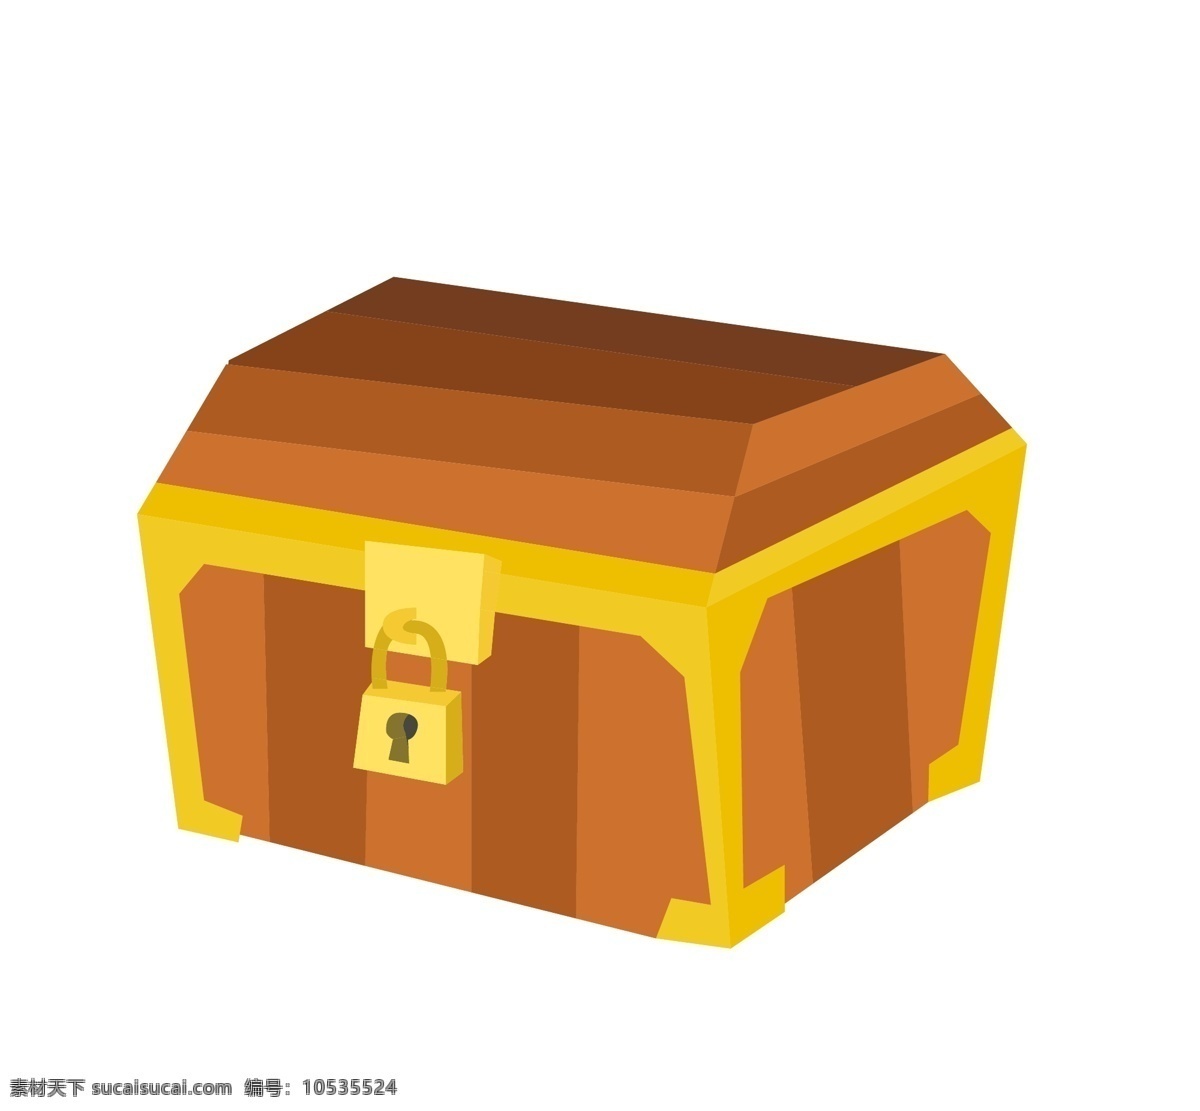 古典 箱子 金钱 插画 宝藏 发光的箱子 古典宝箱 西式宝箱 木质箱子 木头宝箱 宝箱插画 财富宝箱